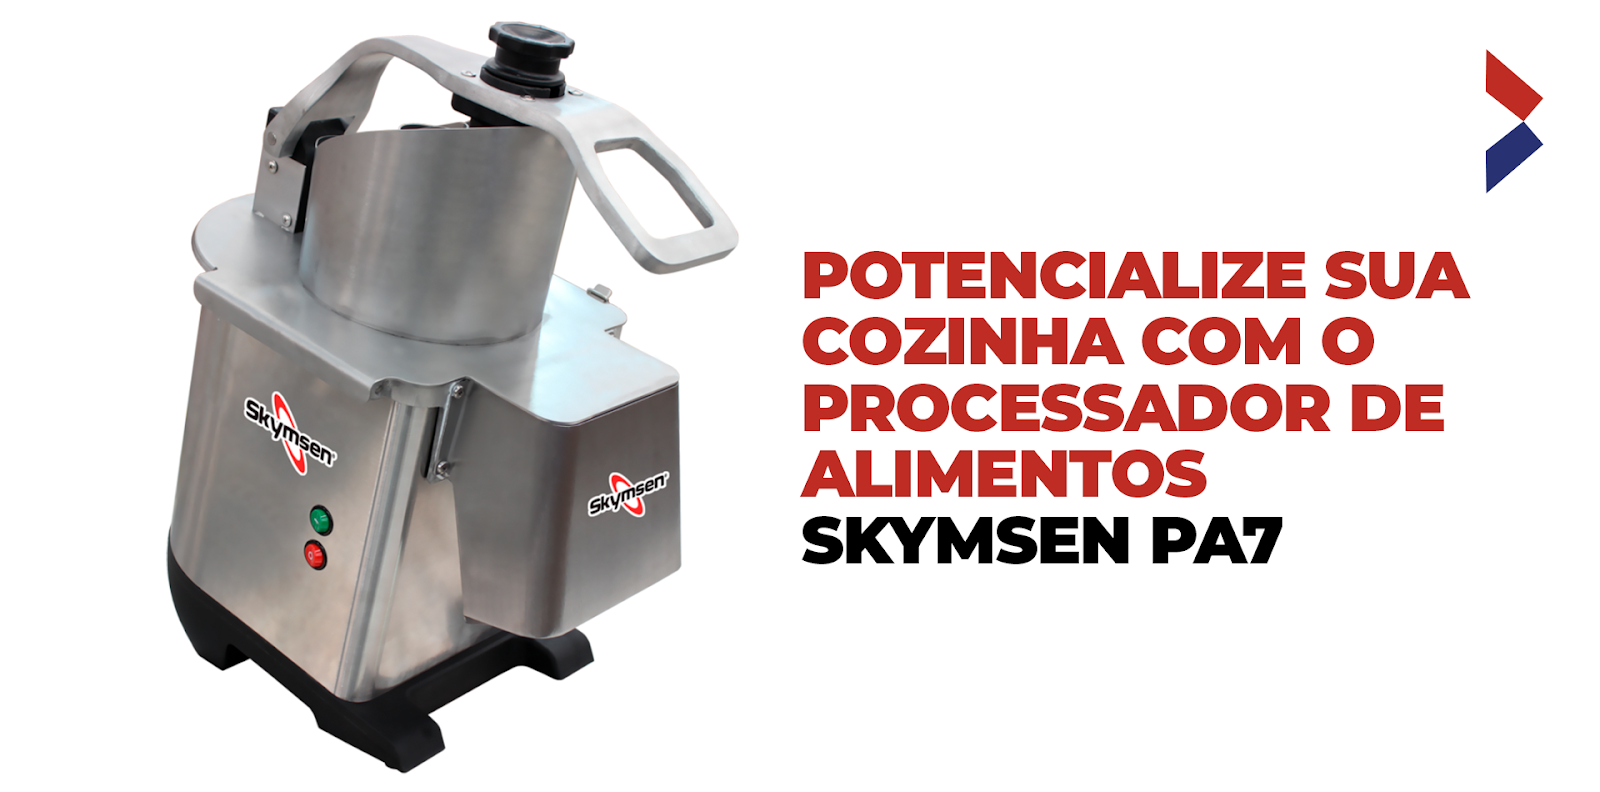 Potencialize sua cozinha com o Processador de Alimentos Skymsen PA7